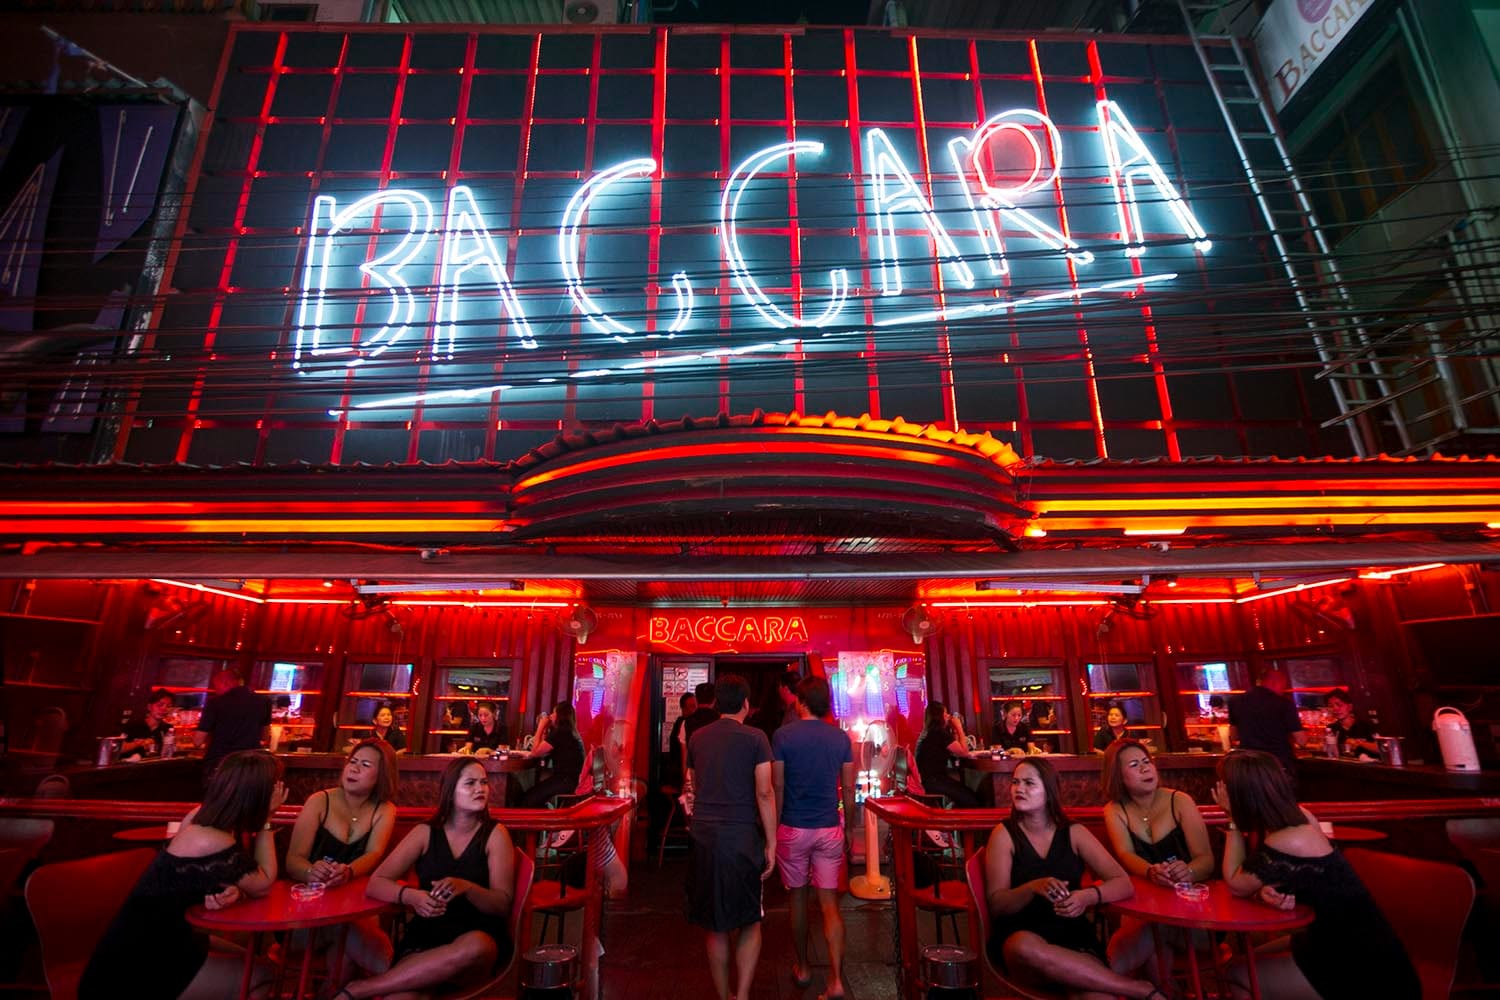 The Baccara Go Go Bar